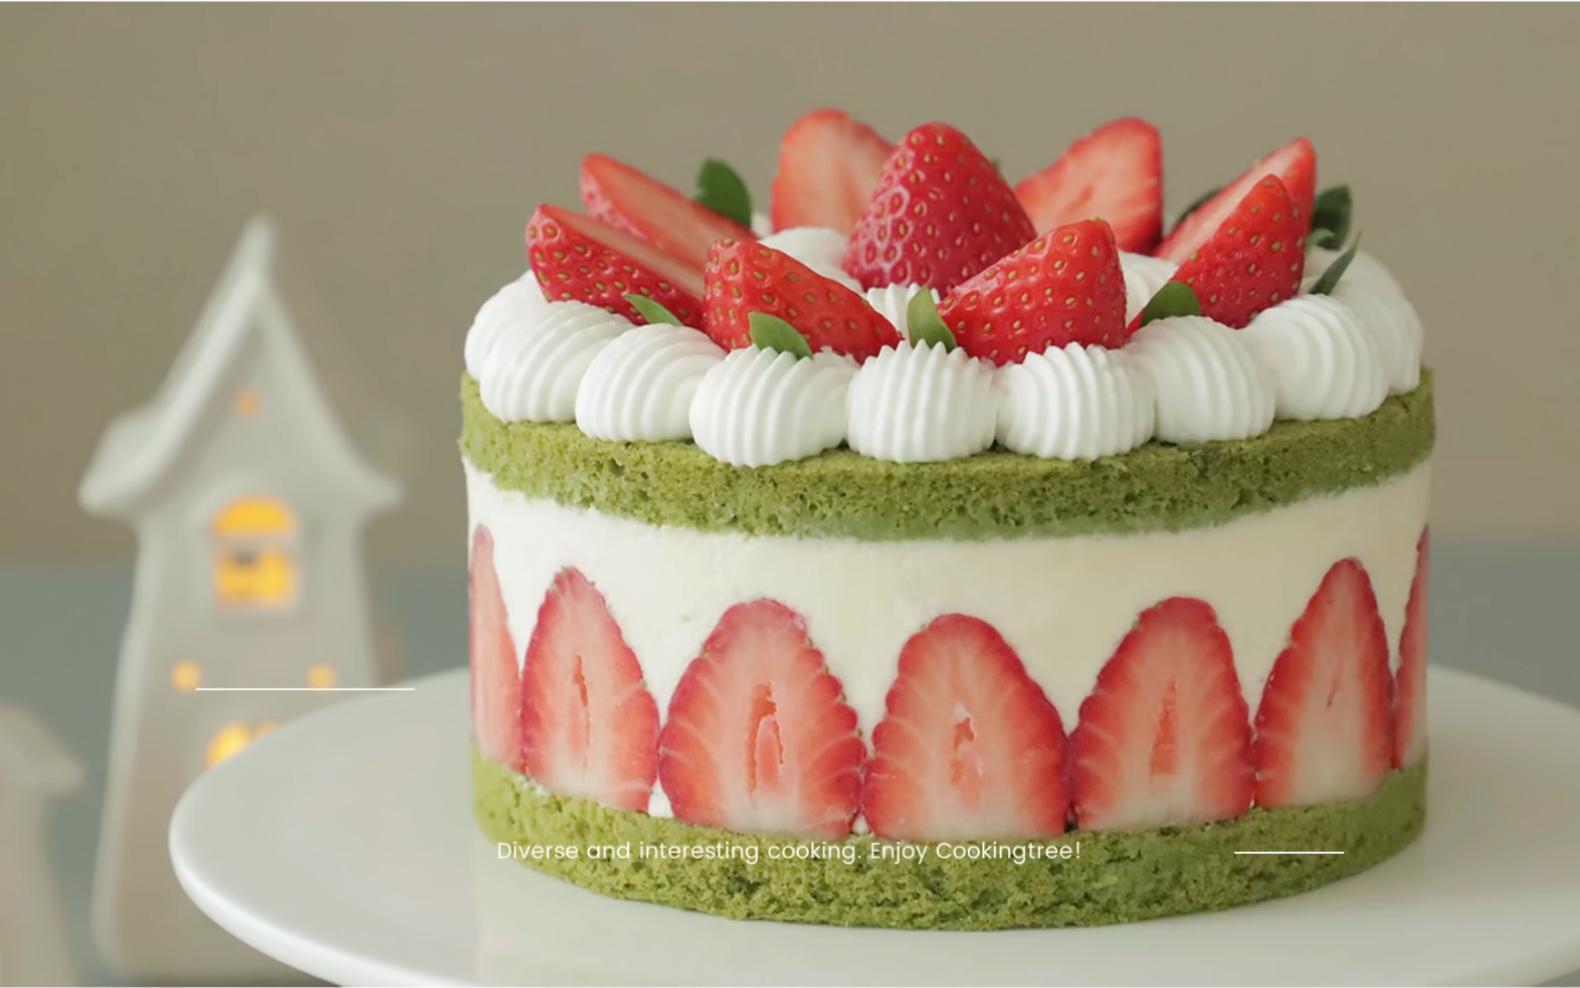 日本圣诞蛋糕的经典款鲜奶草莓蛋糕 | 微博日本